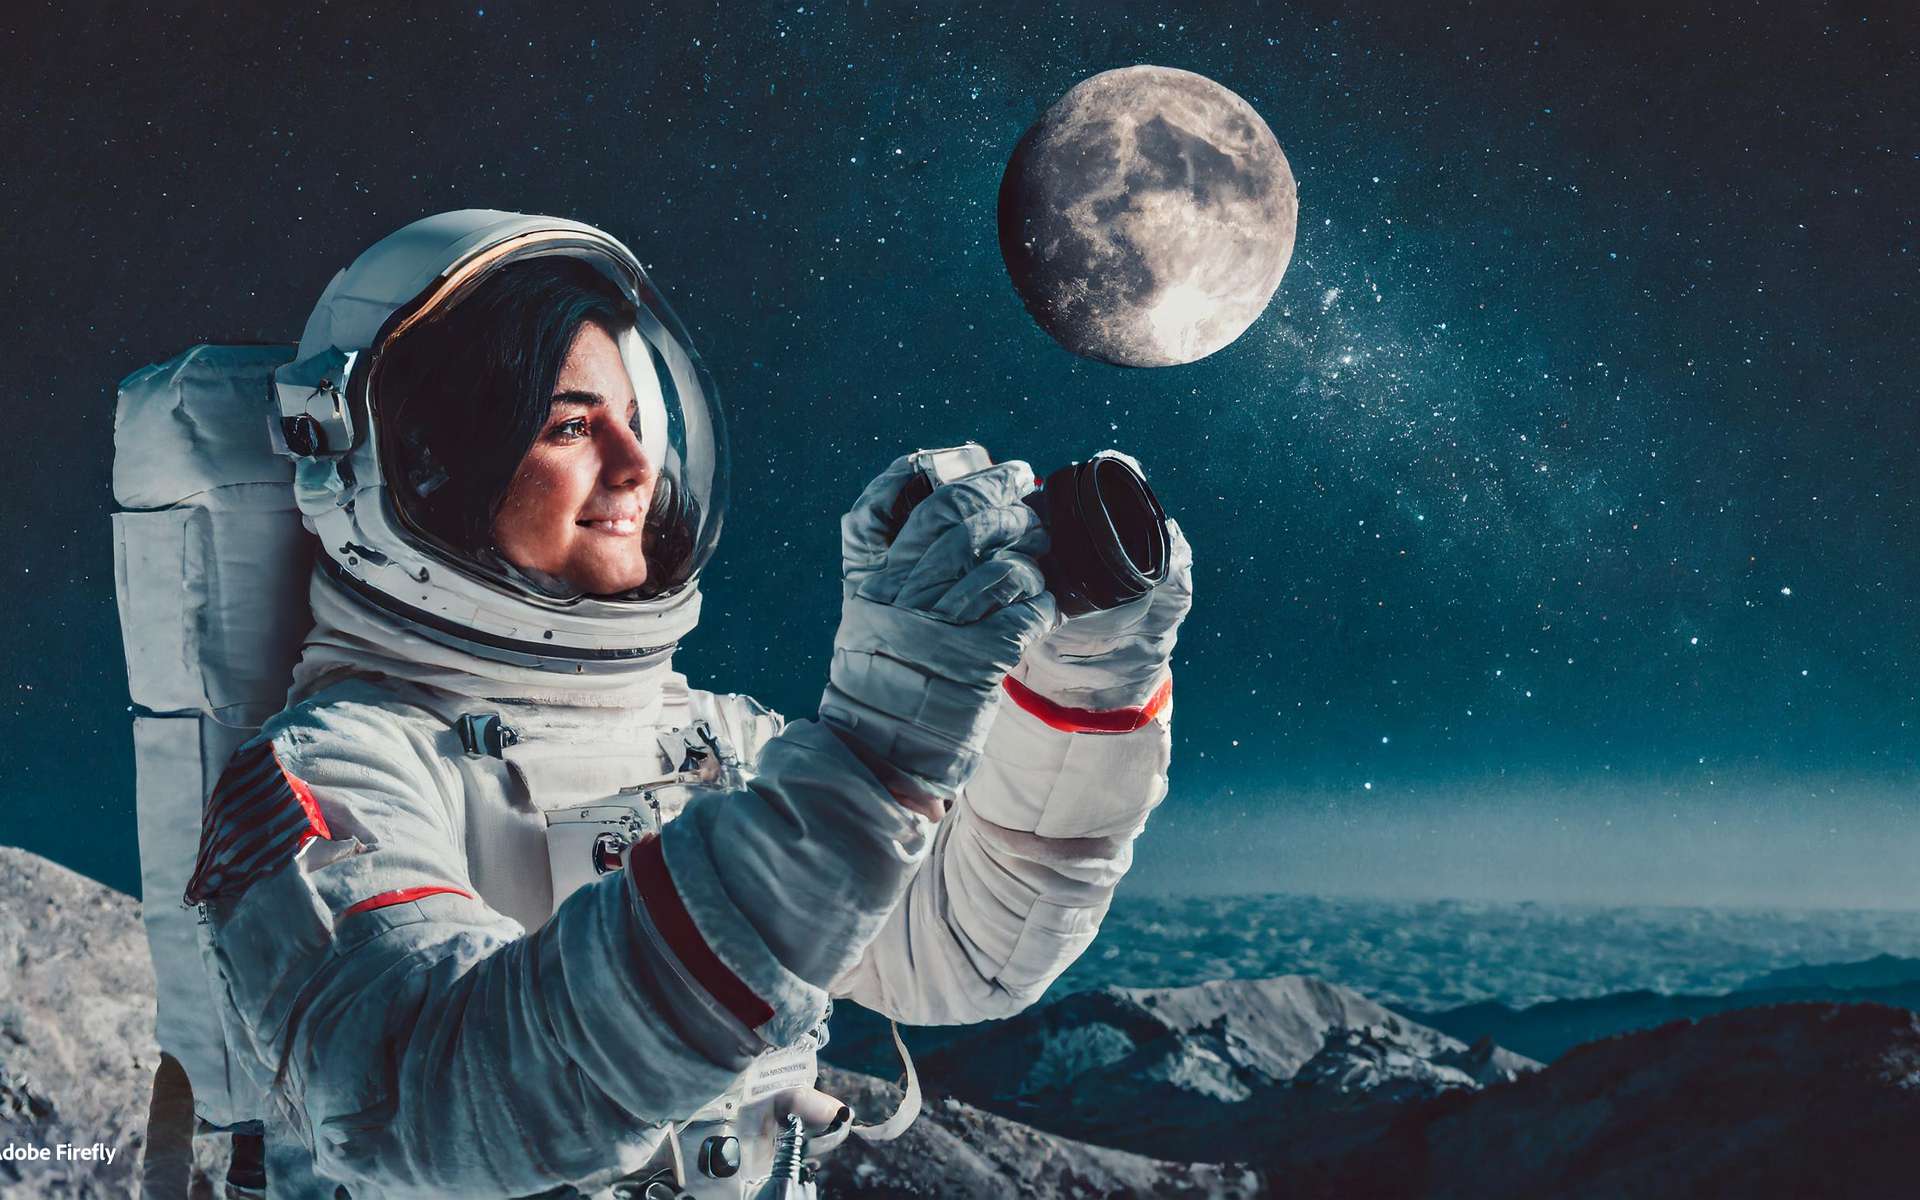 La Nasa dévoile l'appareil photo de l'extrême qui accompagnera les astronautes sur la Lune